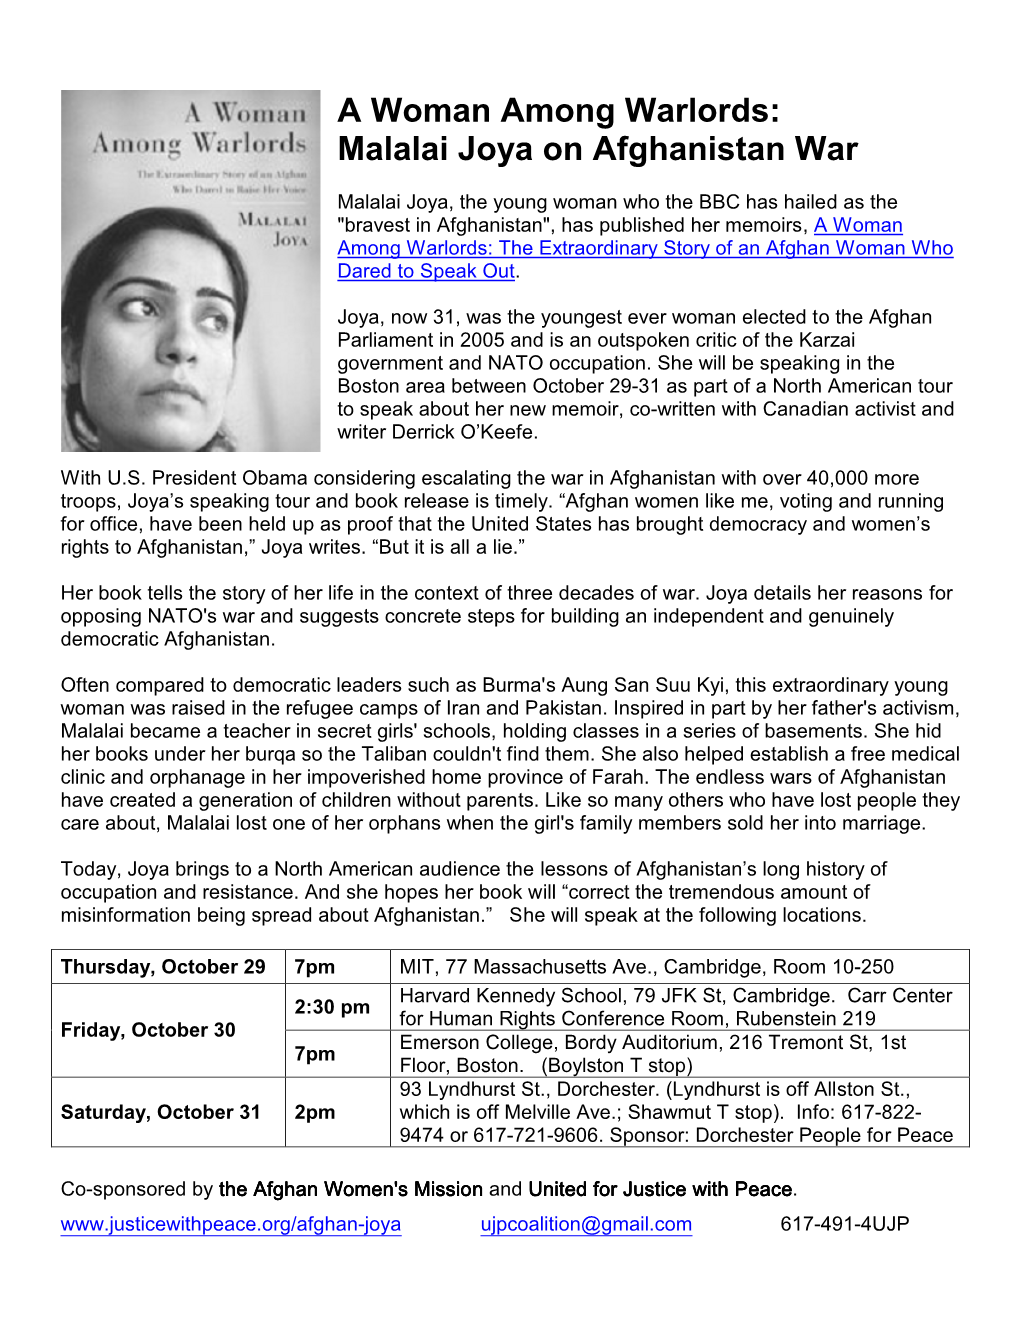 A Woman Among Warlords: Malalai Joya on Afghanistan War